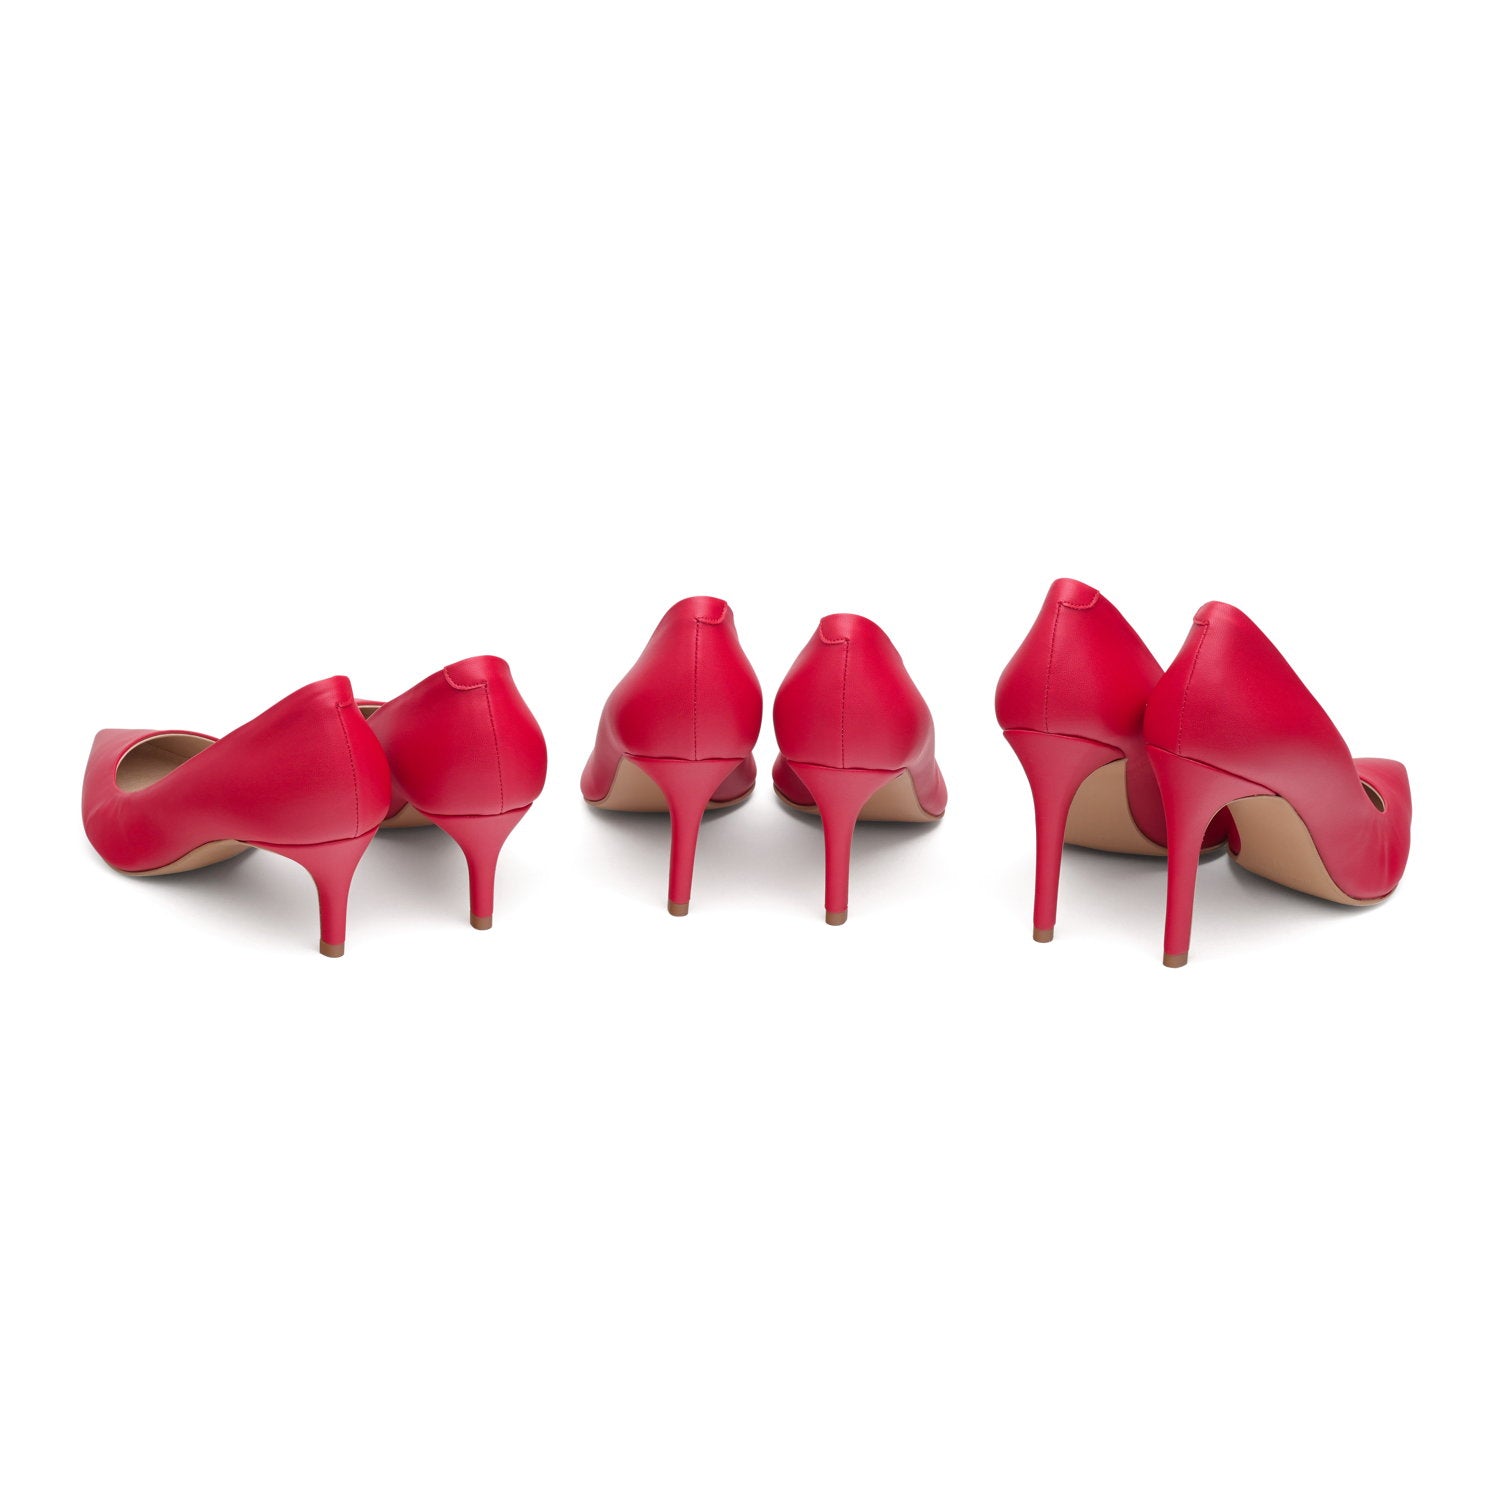 The Red - vegan 50mm heels